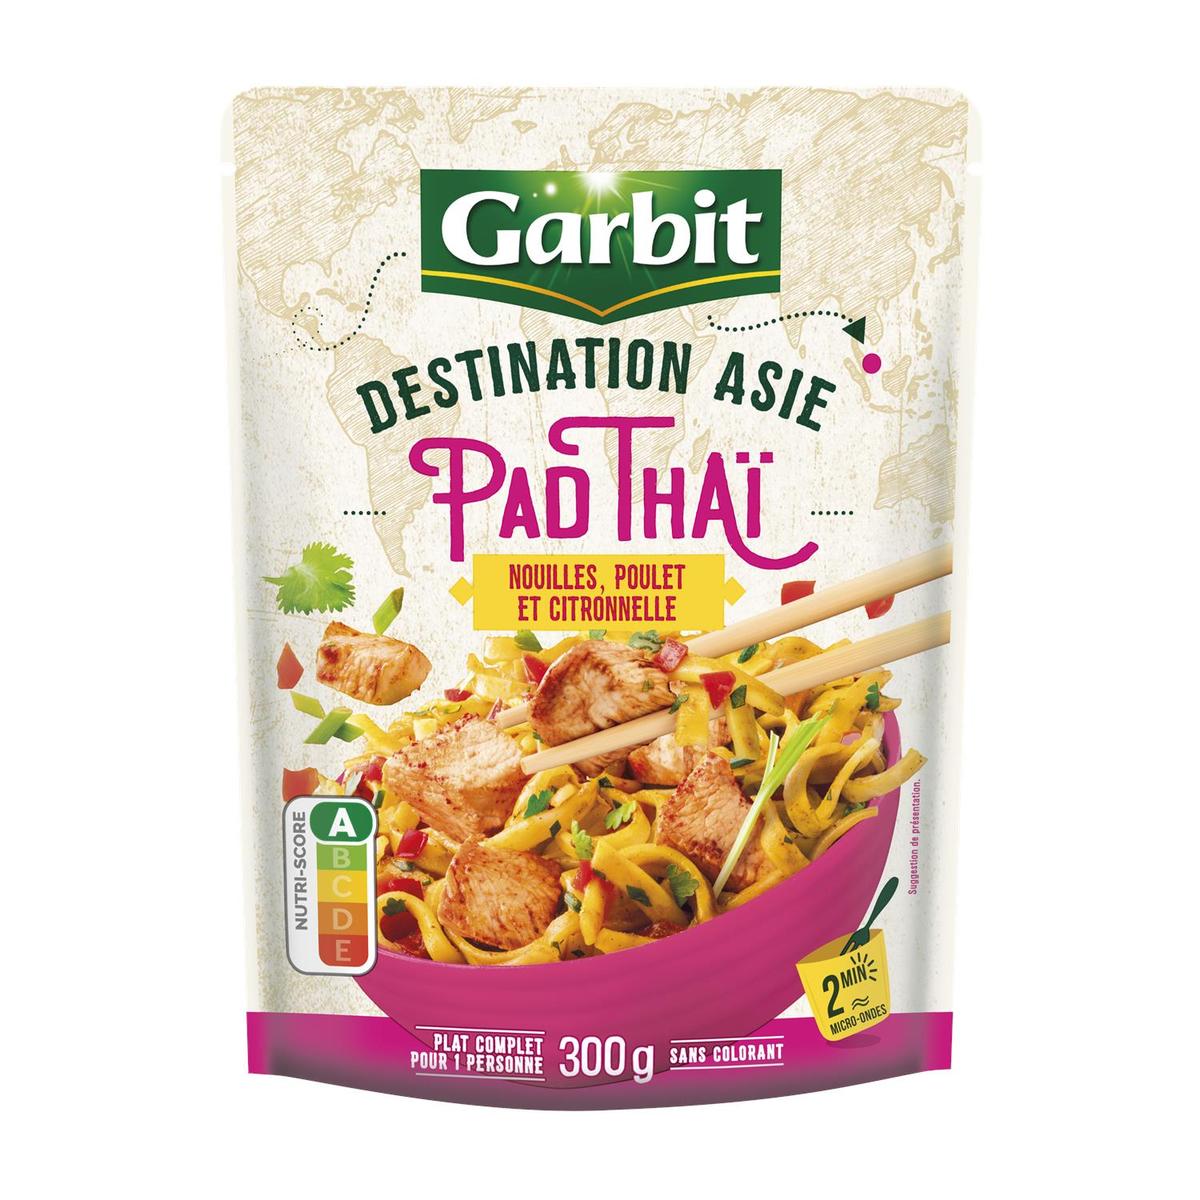 Achat / Vente Garbit Pad Thai Nouilles Poulet et Citronnelle, 300g